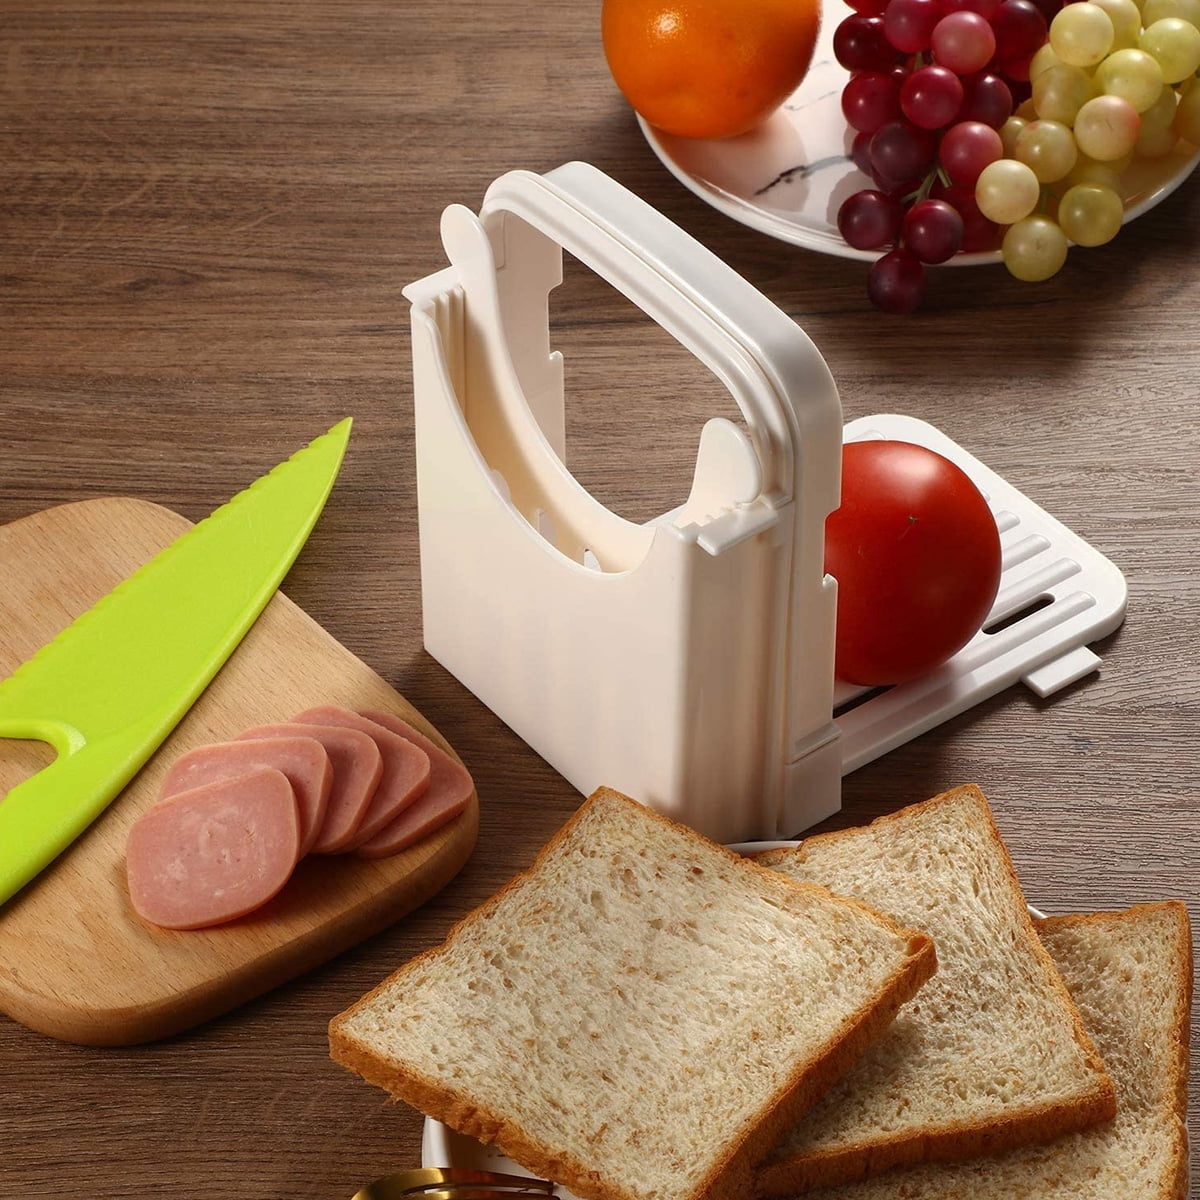 Generic iSH09-M416840mn Bread Slicer, Bread Slicer for Homemade